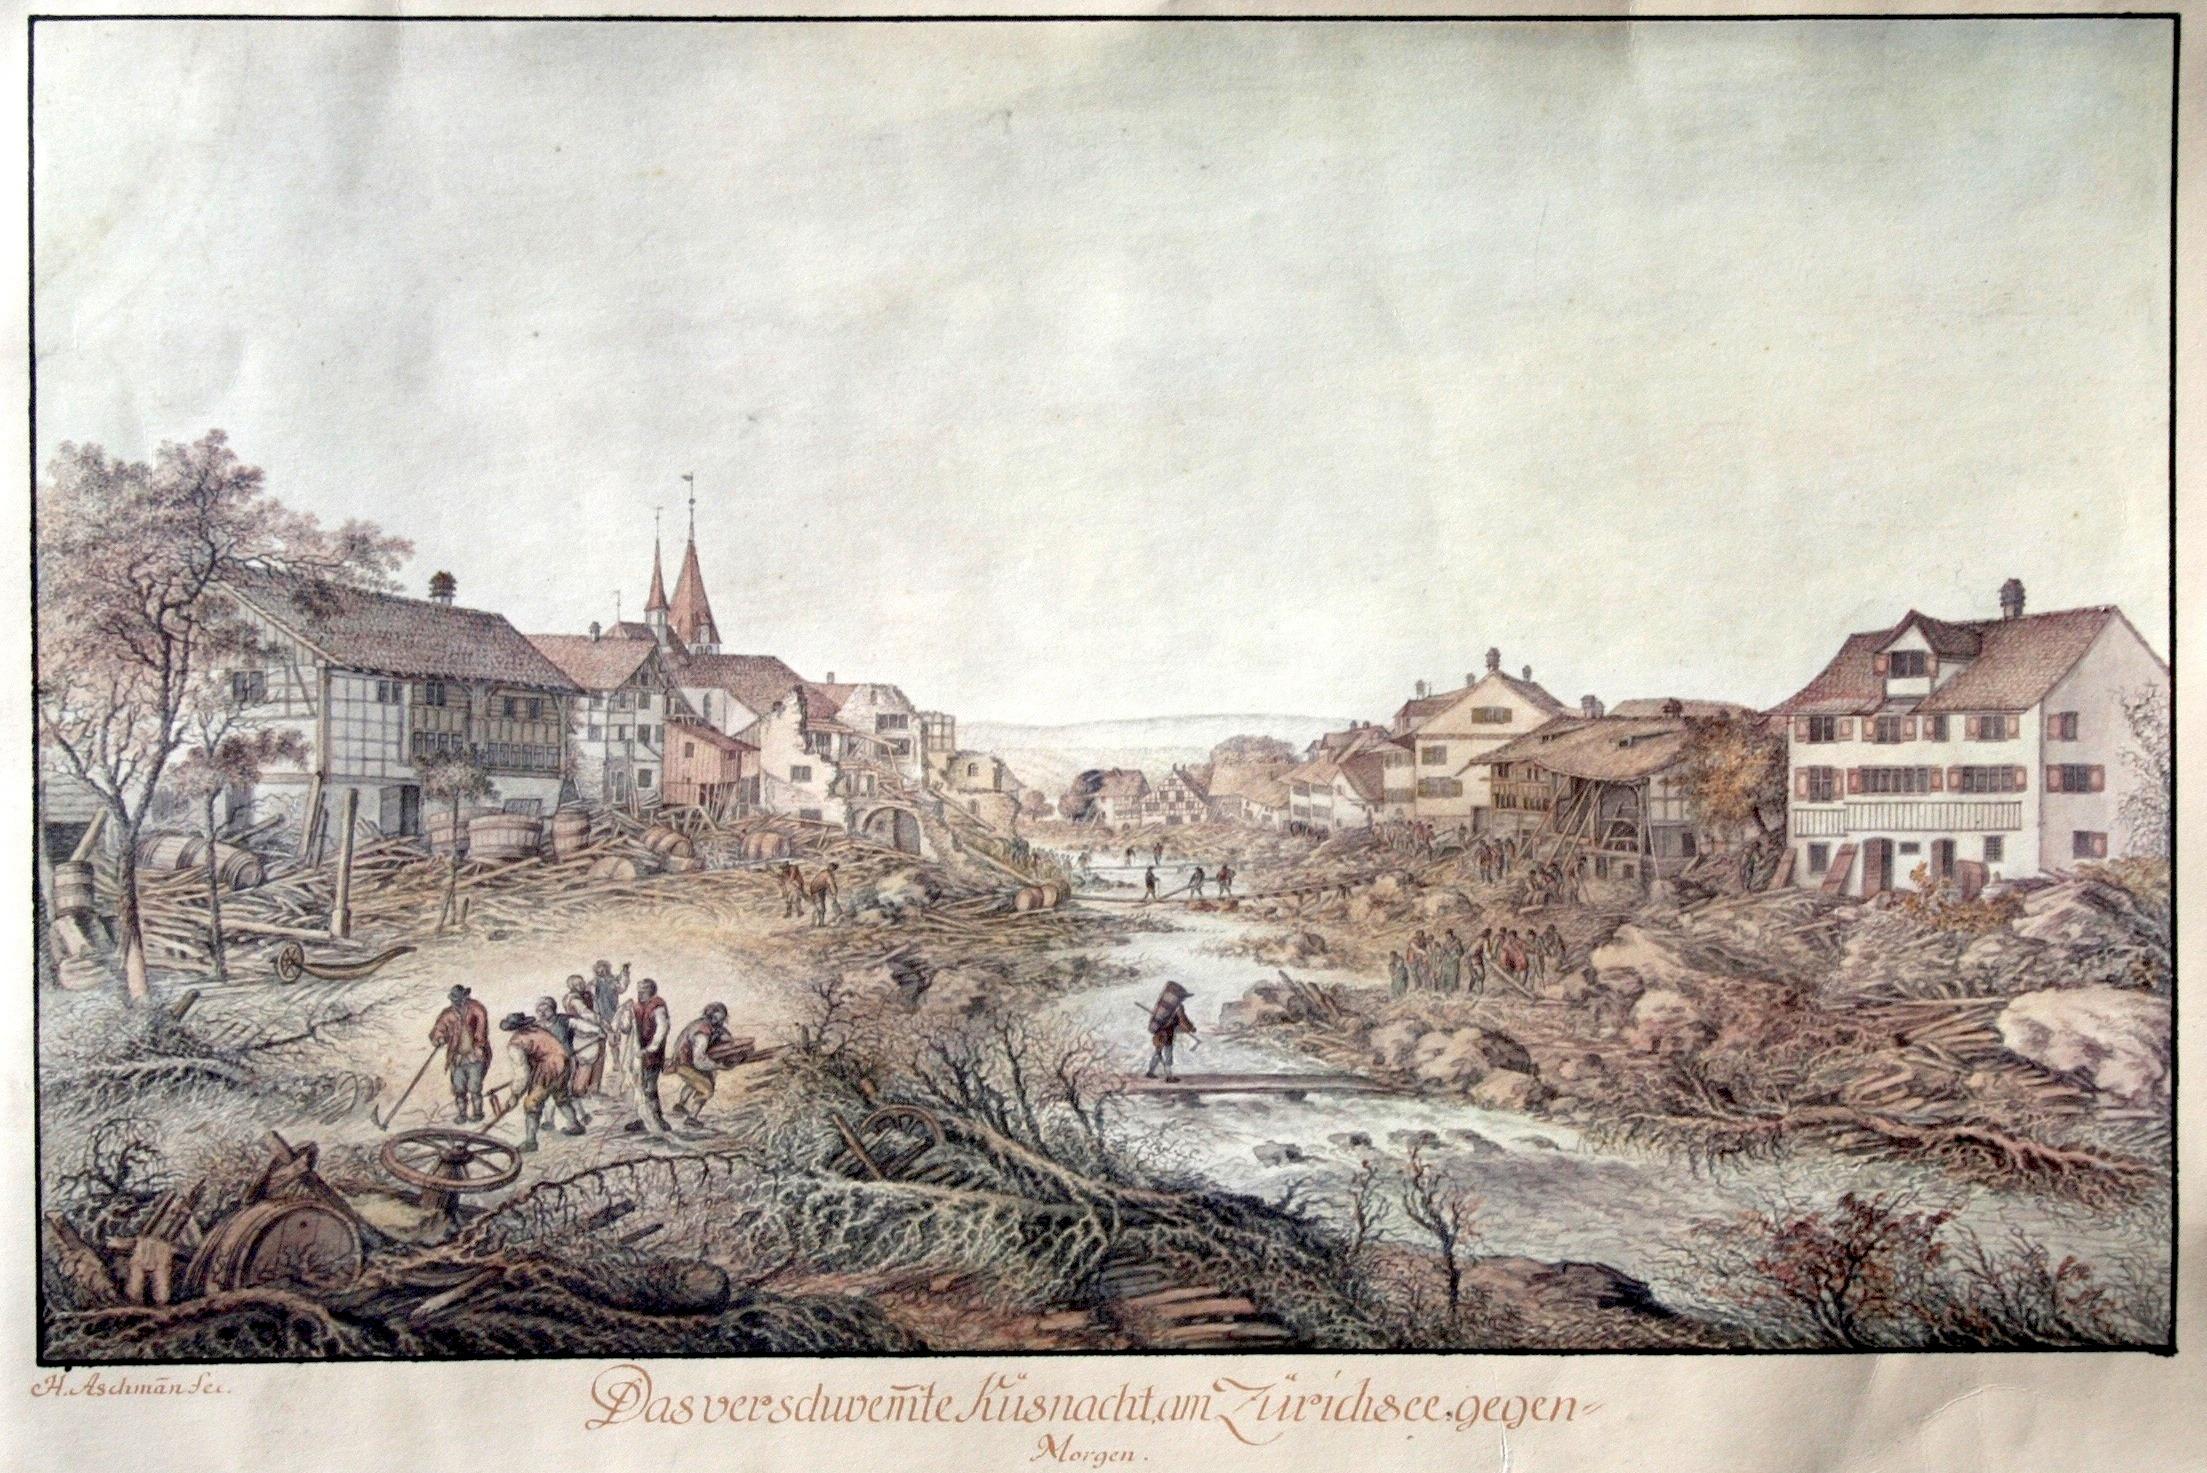 Zeichnung eines überschwemmten Dorfs